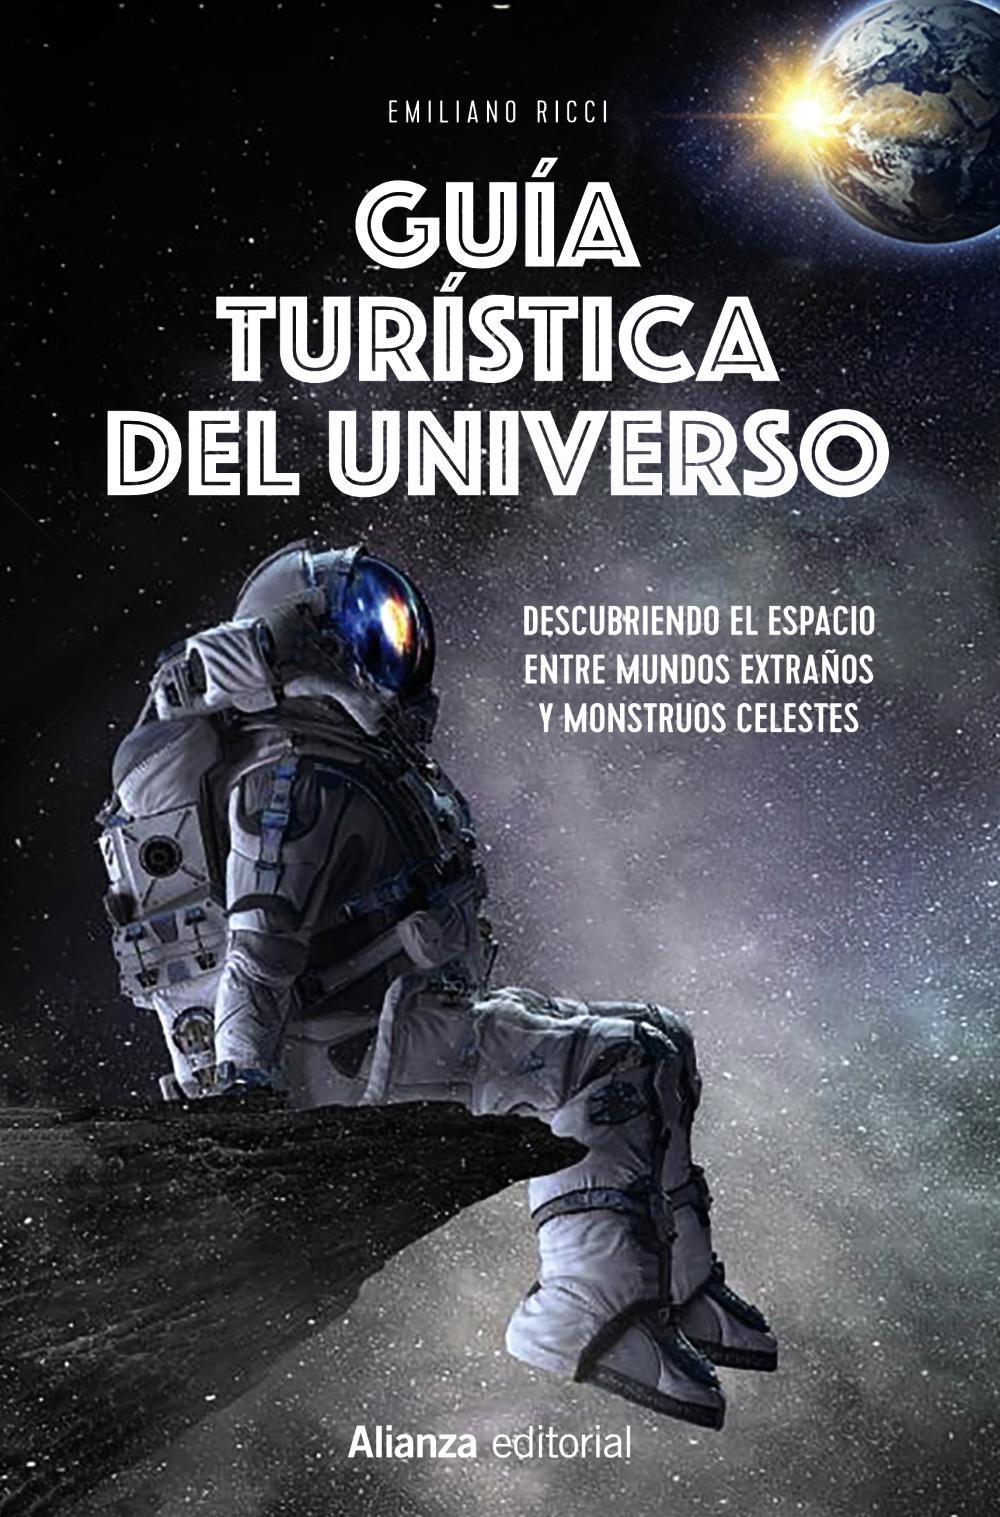 Guía turística del universo "Descubriendo el espacio entre mundos extraños y monstruos celestes"